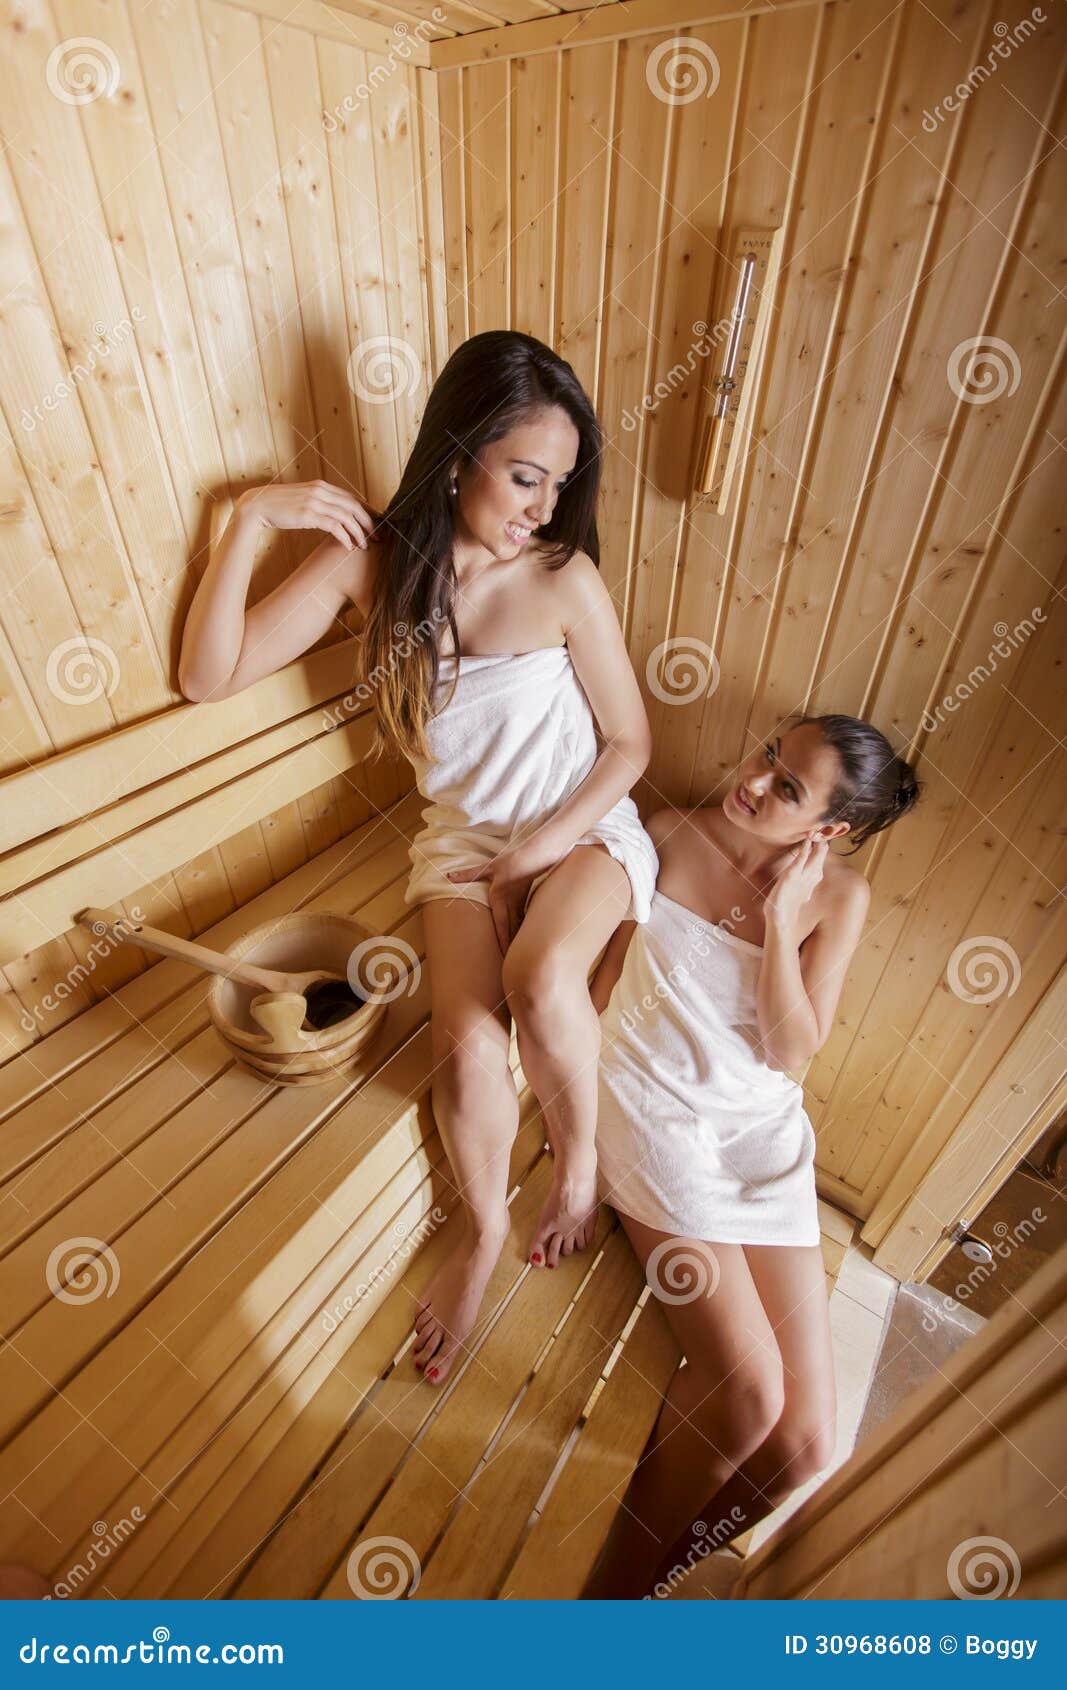 дети в бане с голыми фото 54